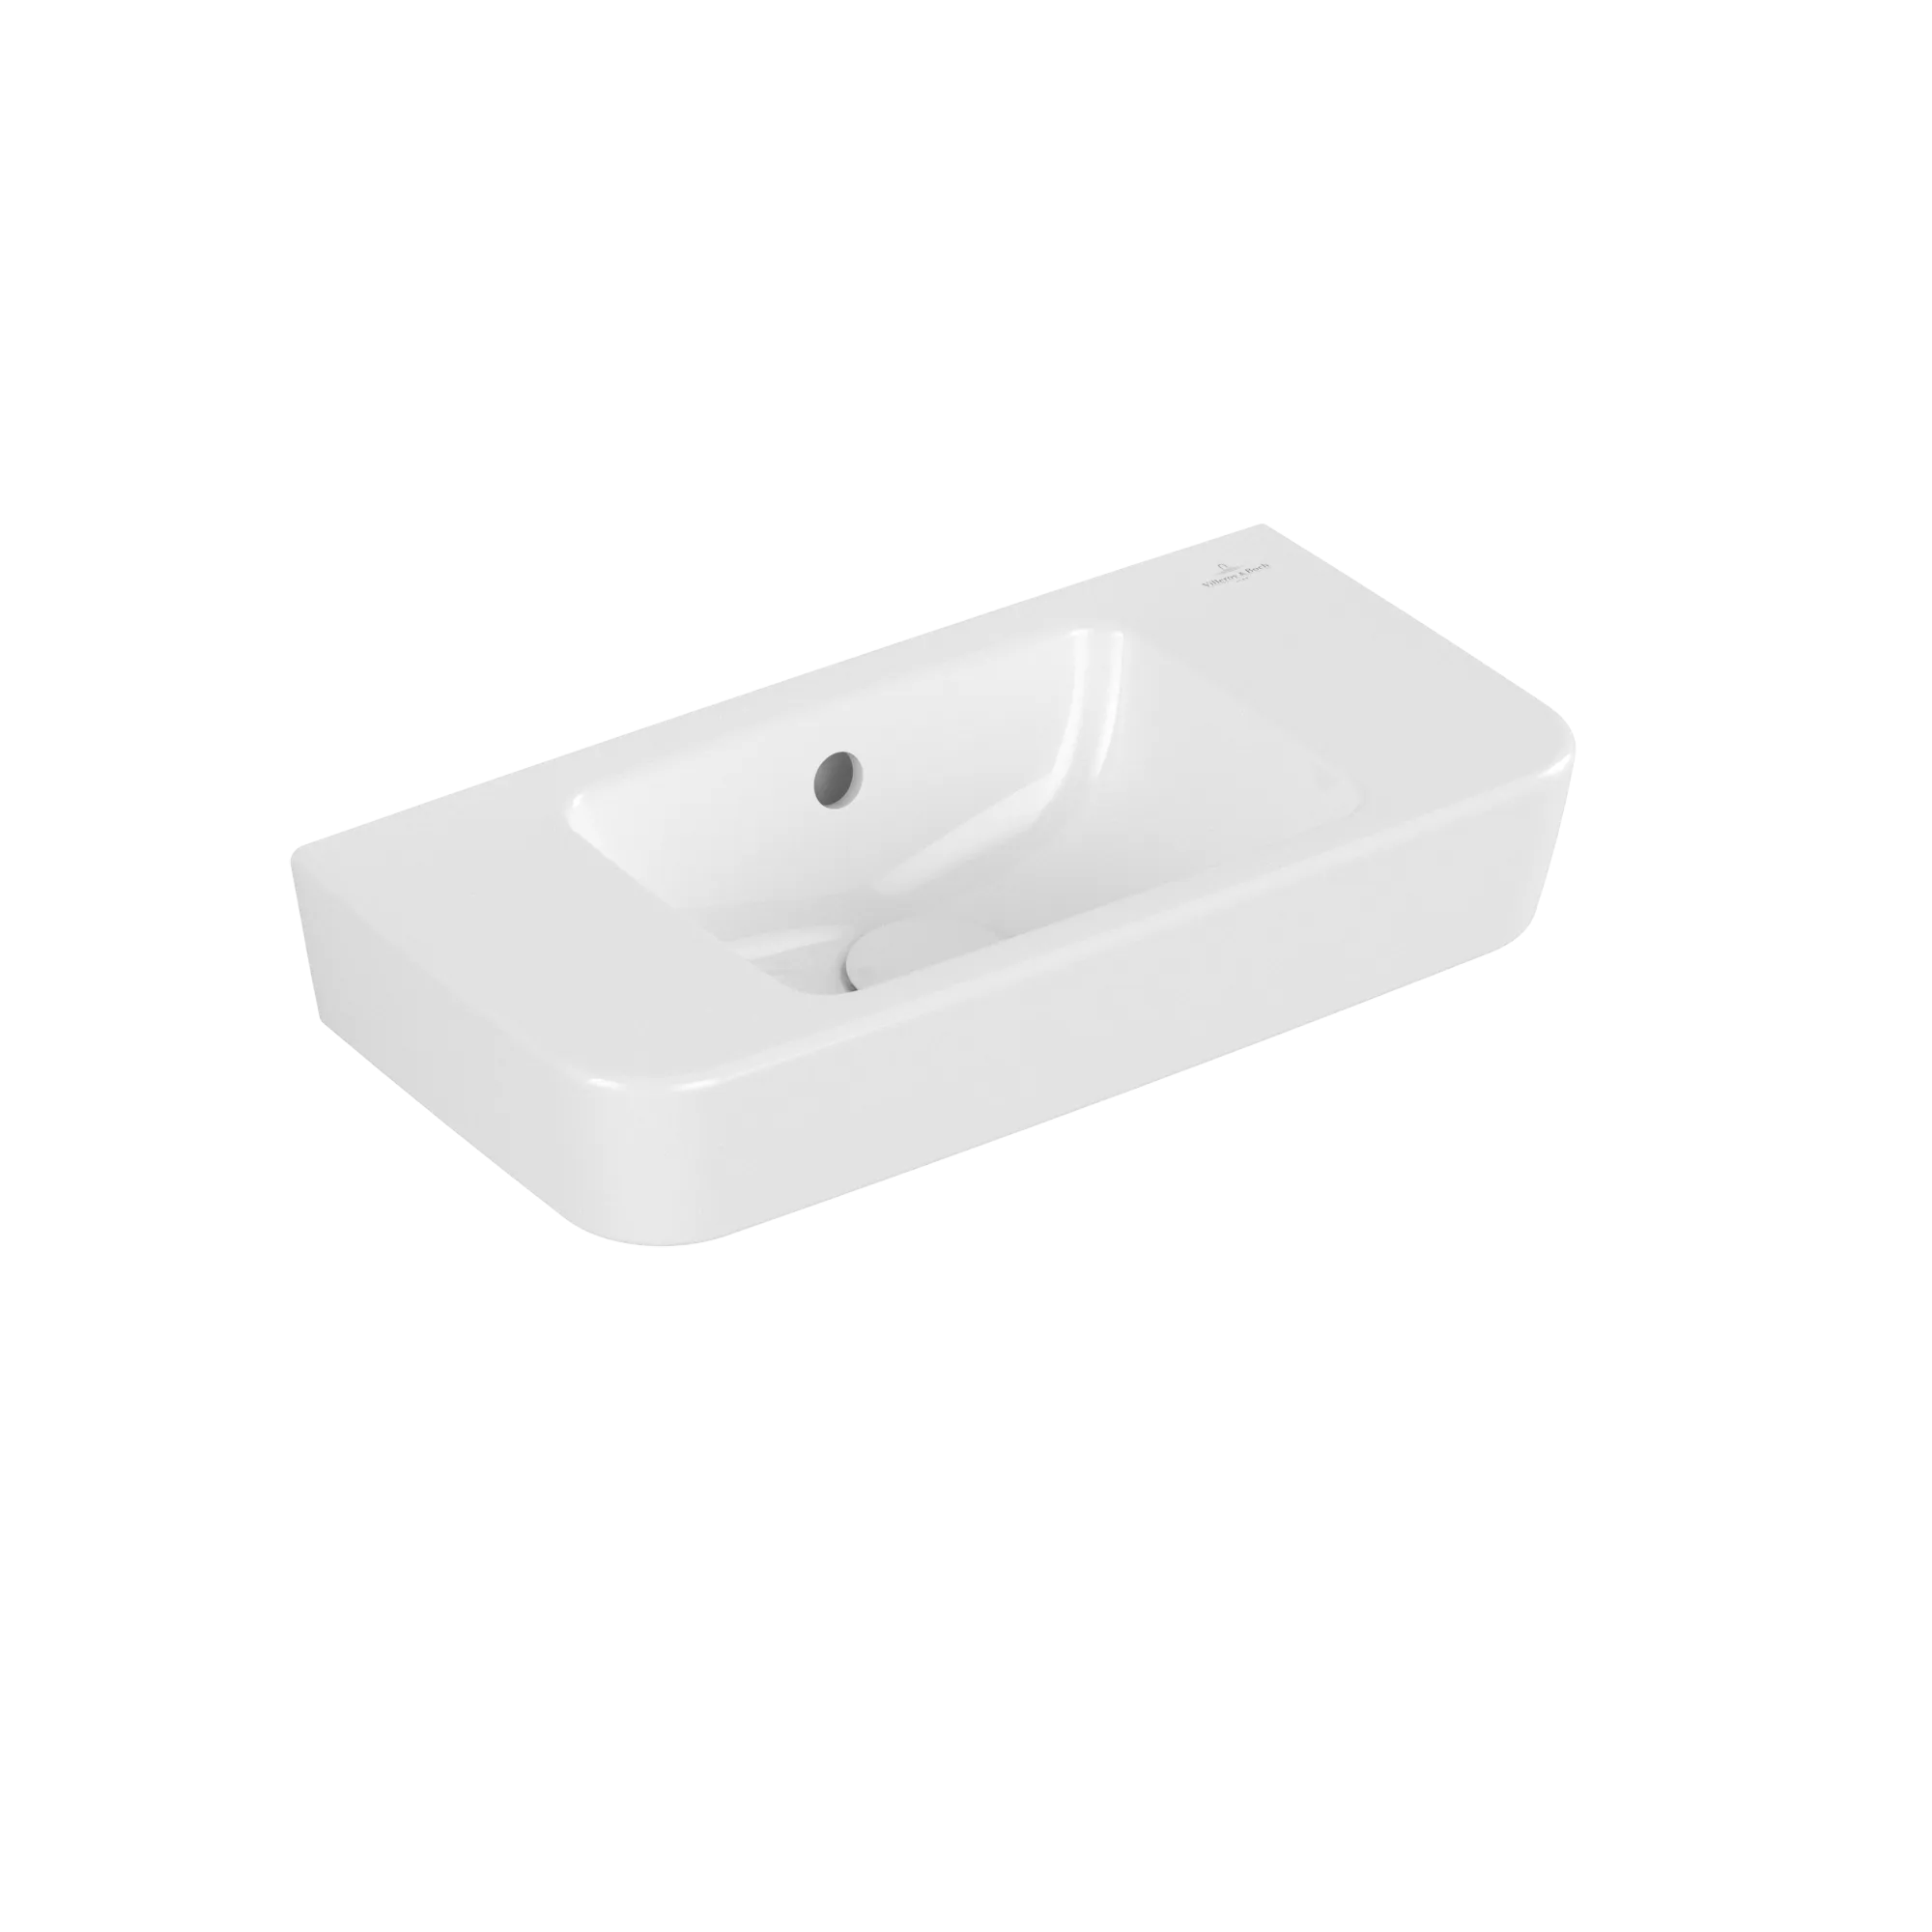 Bild von VILLEROY BOCH O.novo Handwaschbecken Compact, 500 x 250 x 145 mm, Weiß Alpin CeramicPlus, mit Überlauf #434252R1